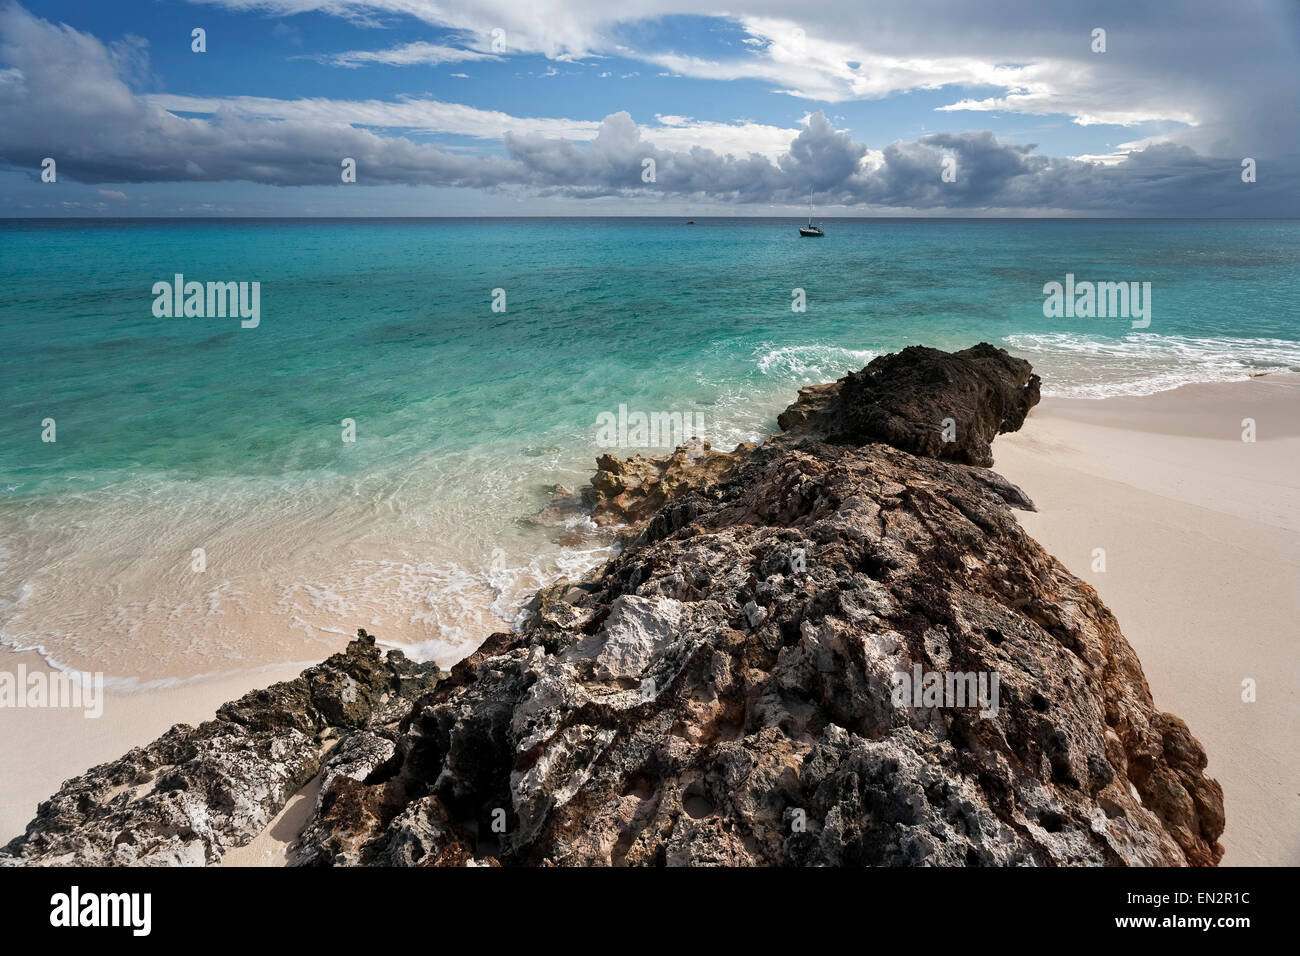 Remote and scenic Dog Island, Anguilla Stock Photo